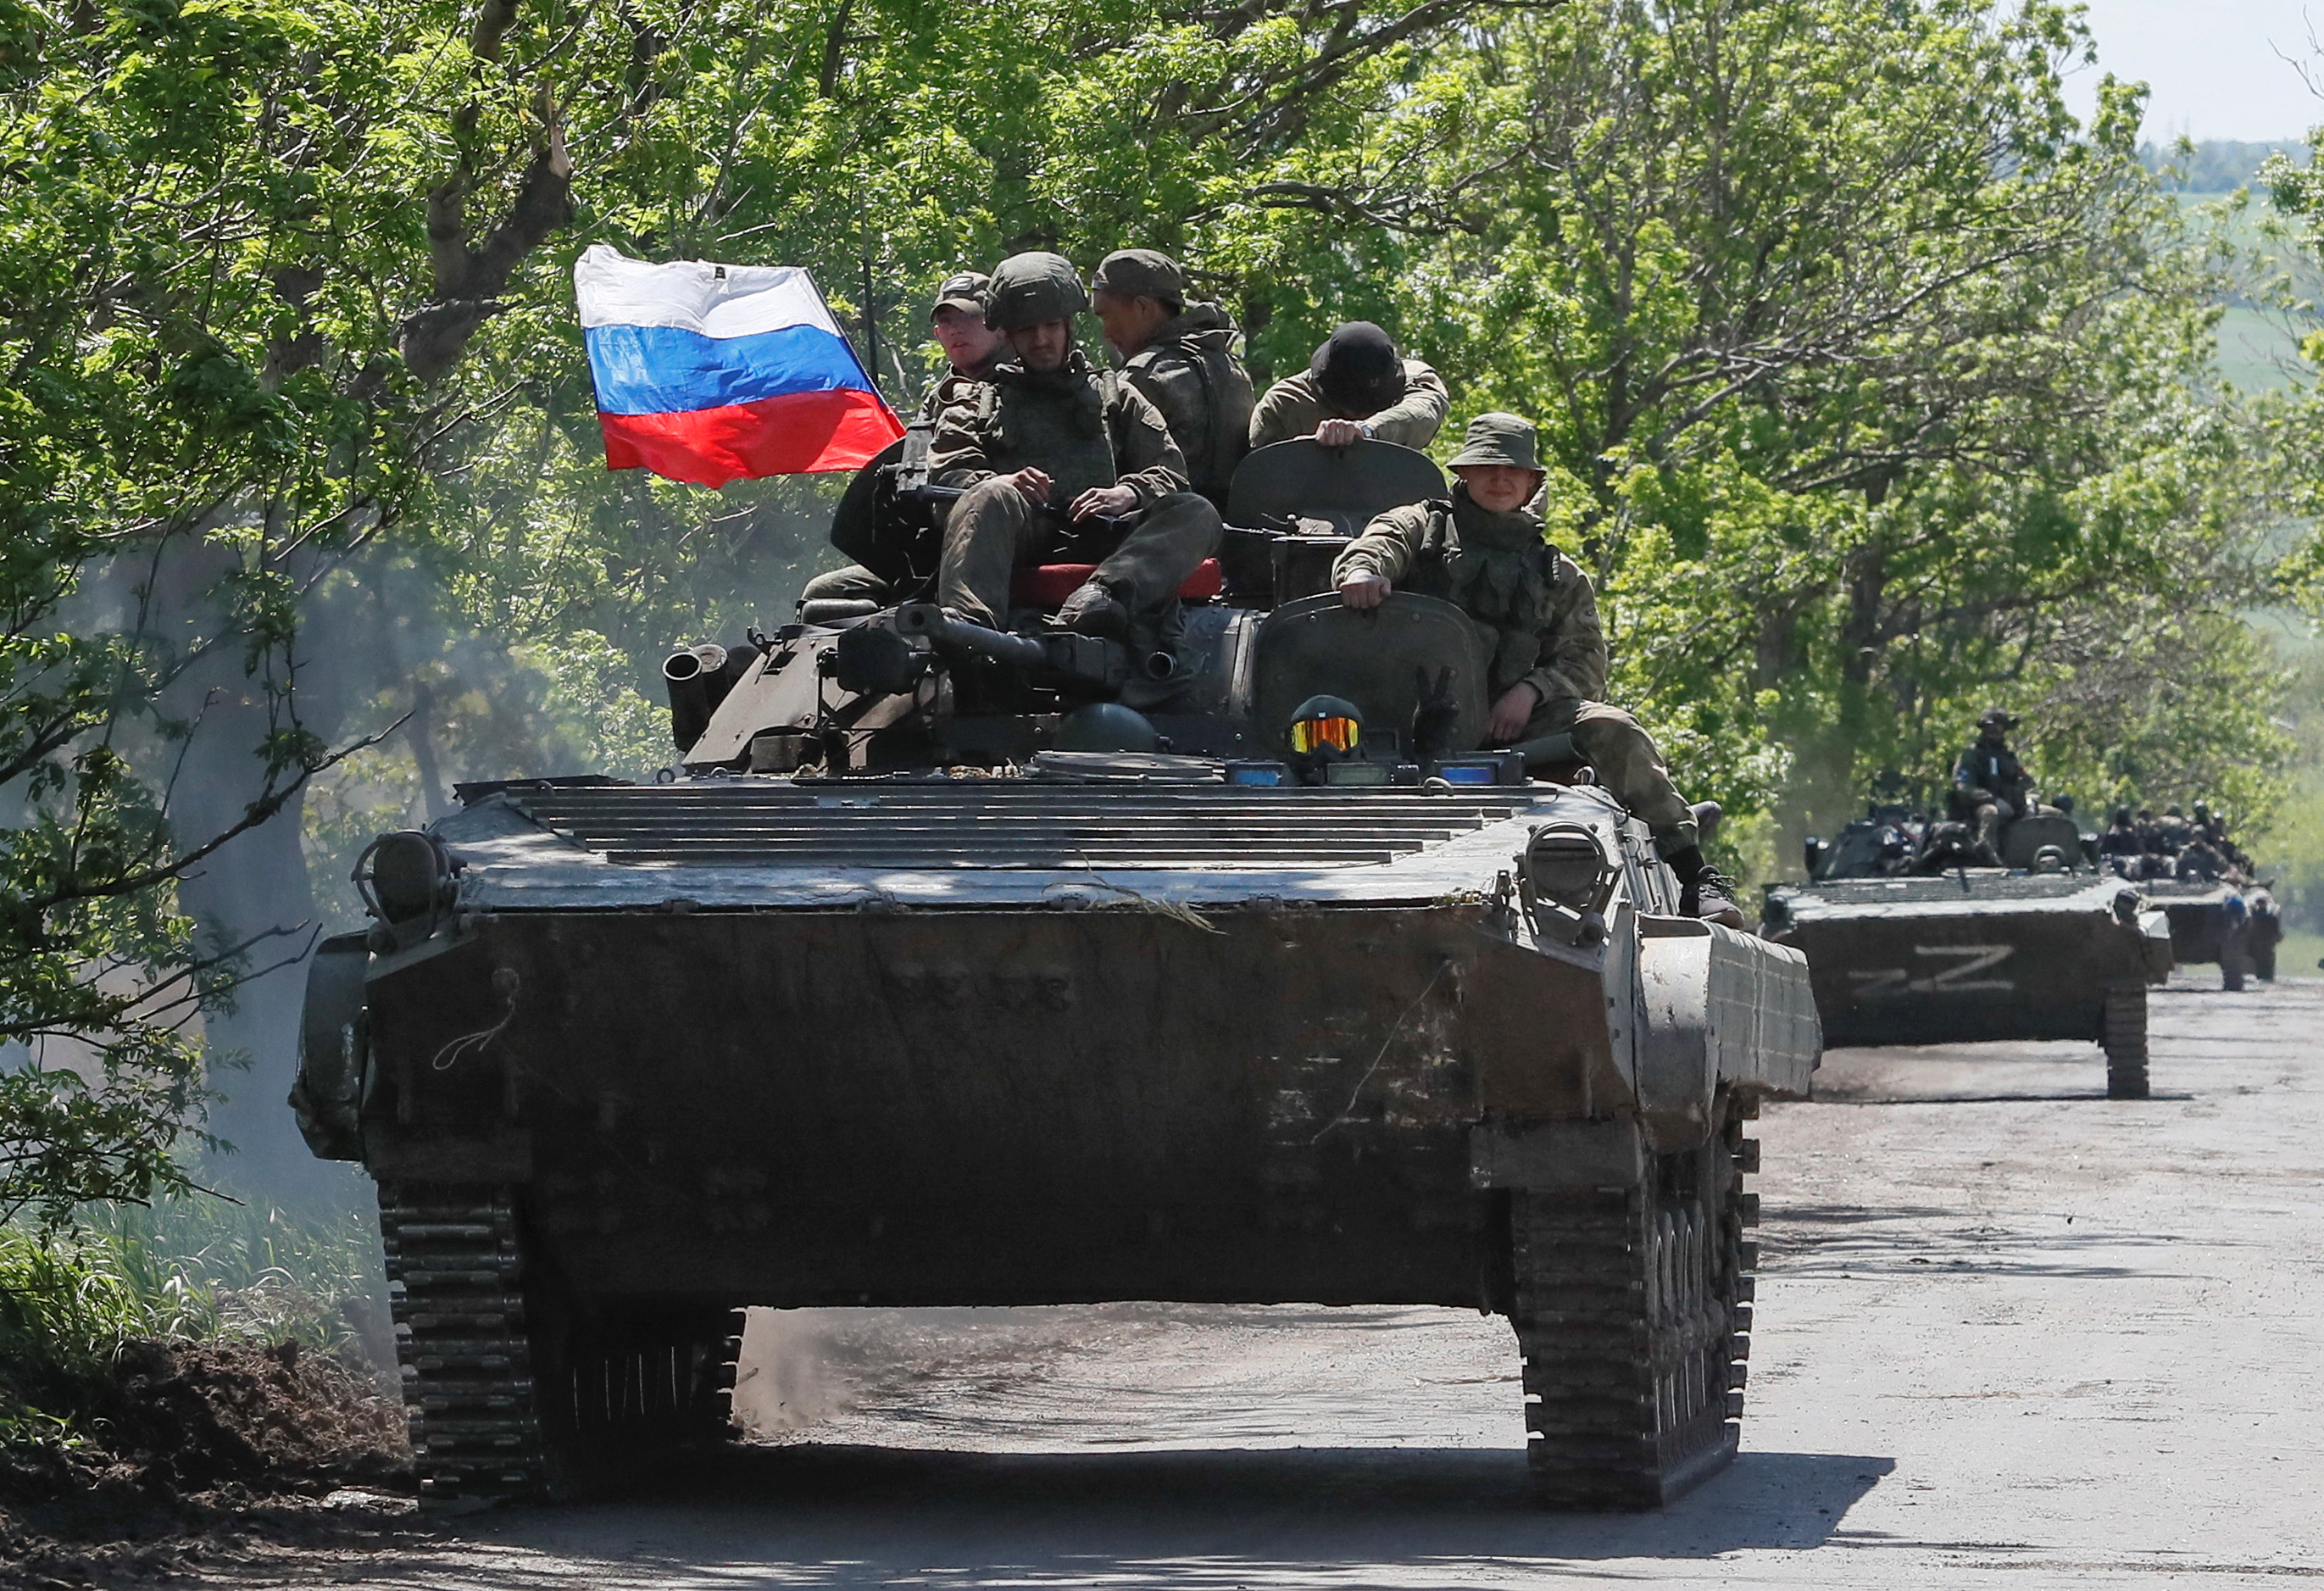 Un convoy de vehículos blindados rusos circula por una carretera en el transcurso del conflicto entre Ucrania y Rusia cerca de Mariupol en la región de Donetsk, Ucrania 20 de mayo de 2022. (REUTERS/Alexander Ermochenko)